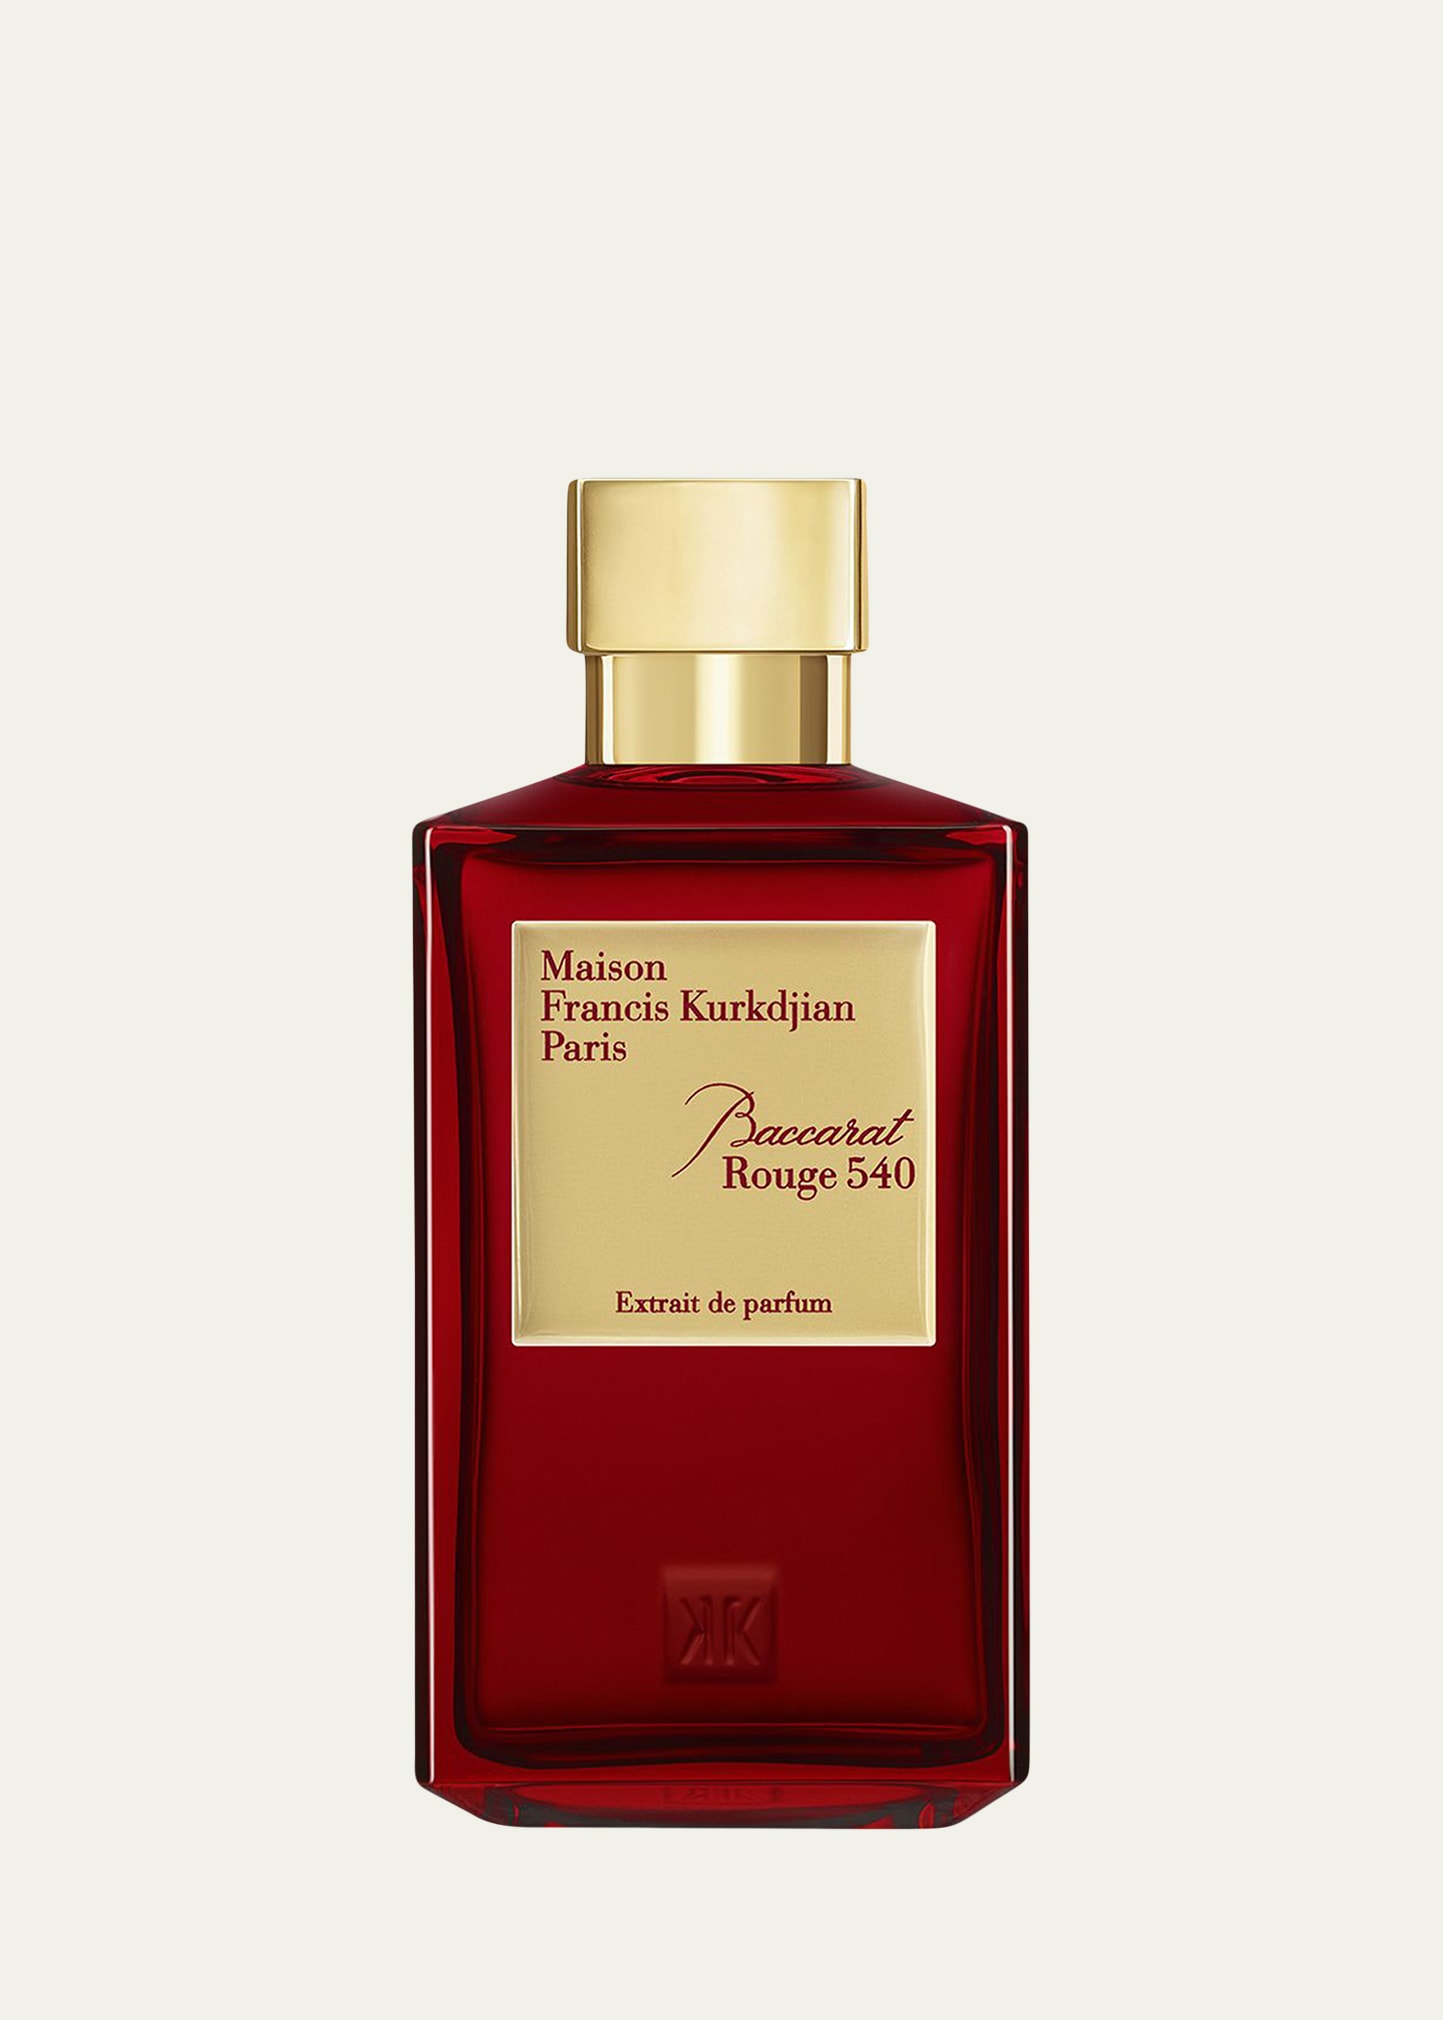 Maison Francis Kurkdjian Baccarat Rouge 540 Extrait de parfum, 6.8